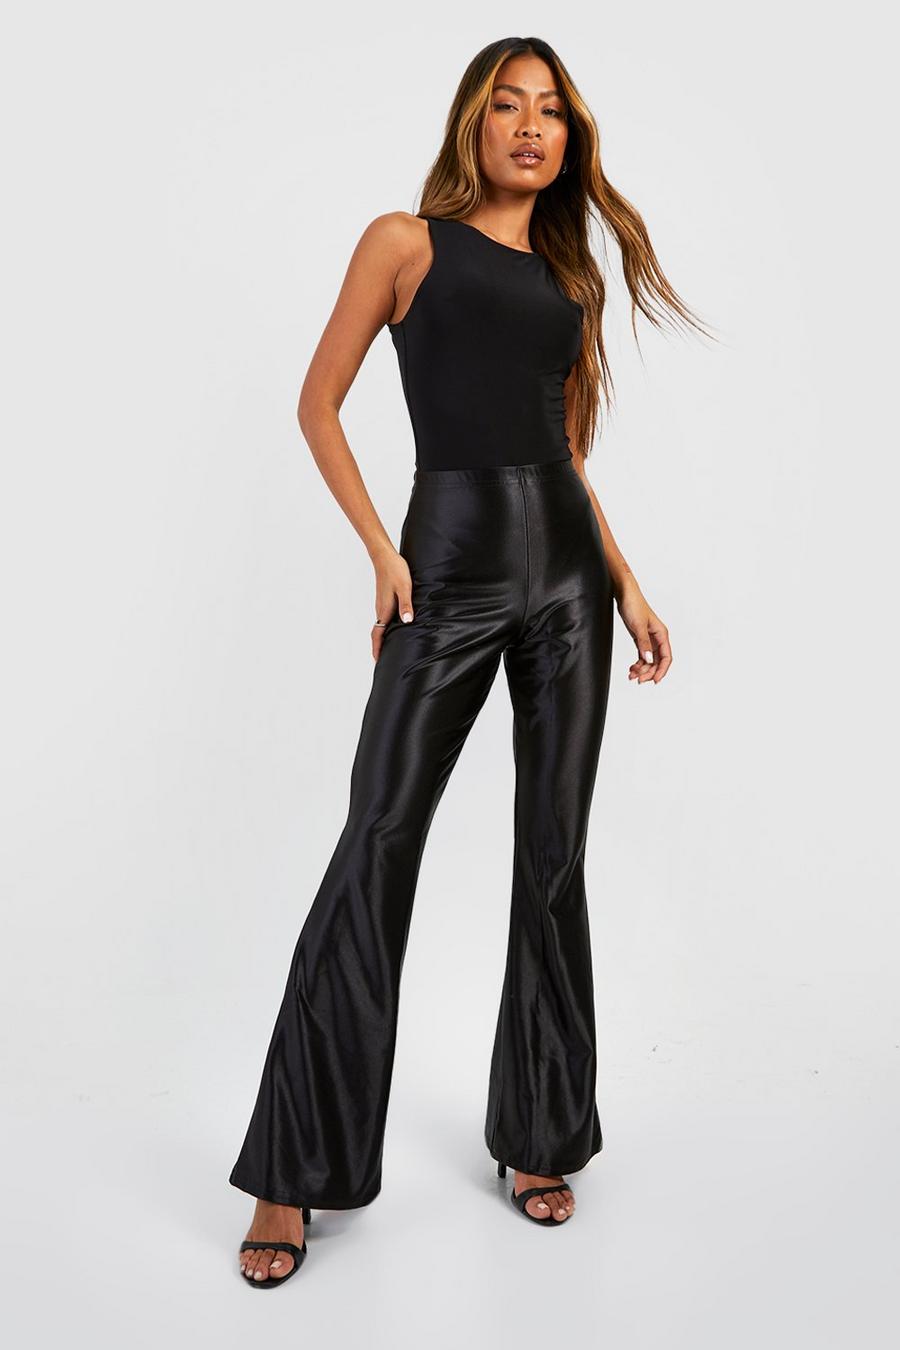 https://media.boohoo.com/i/boohoo/gzz68495_black_xl/female-black-stretch-satin-fit-&-flare-trousers/?w=900&qlt=default&fmt.jp2.qlt=70&fmt=auto&sm=fit